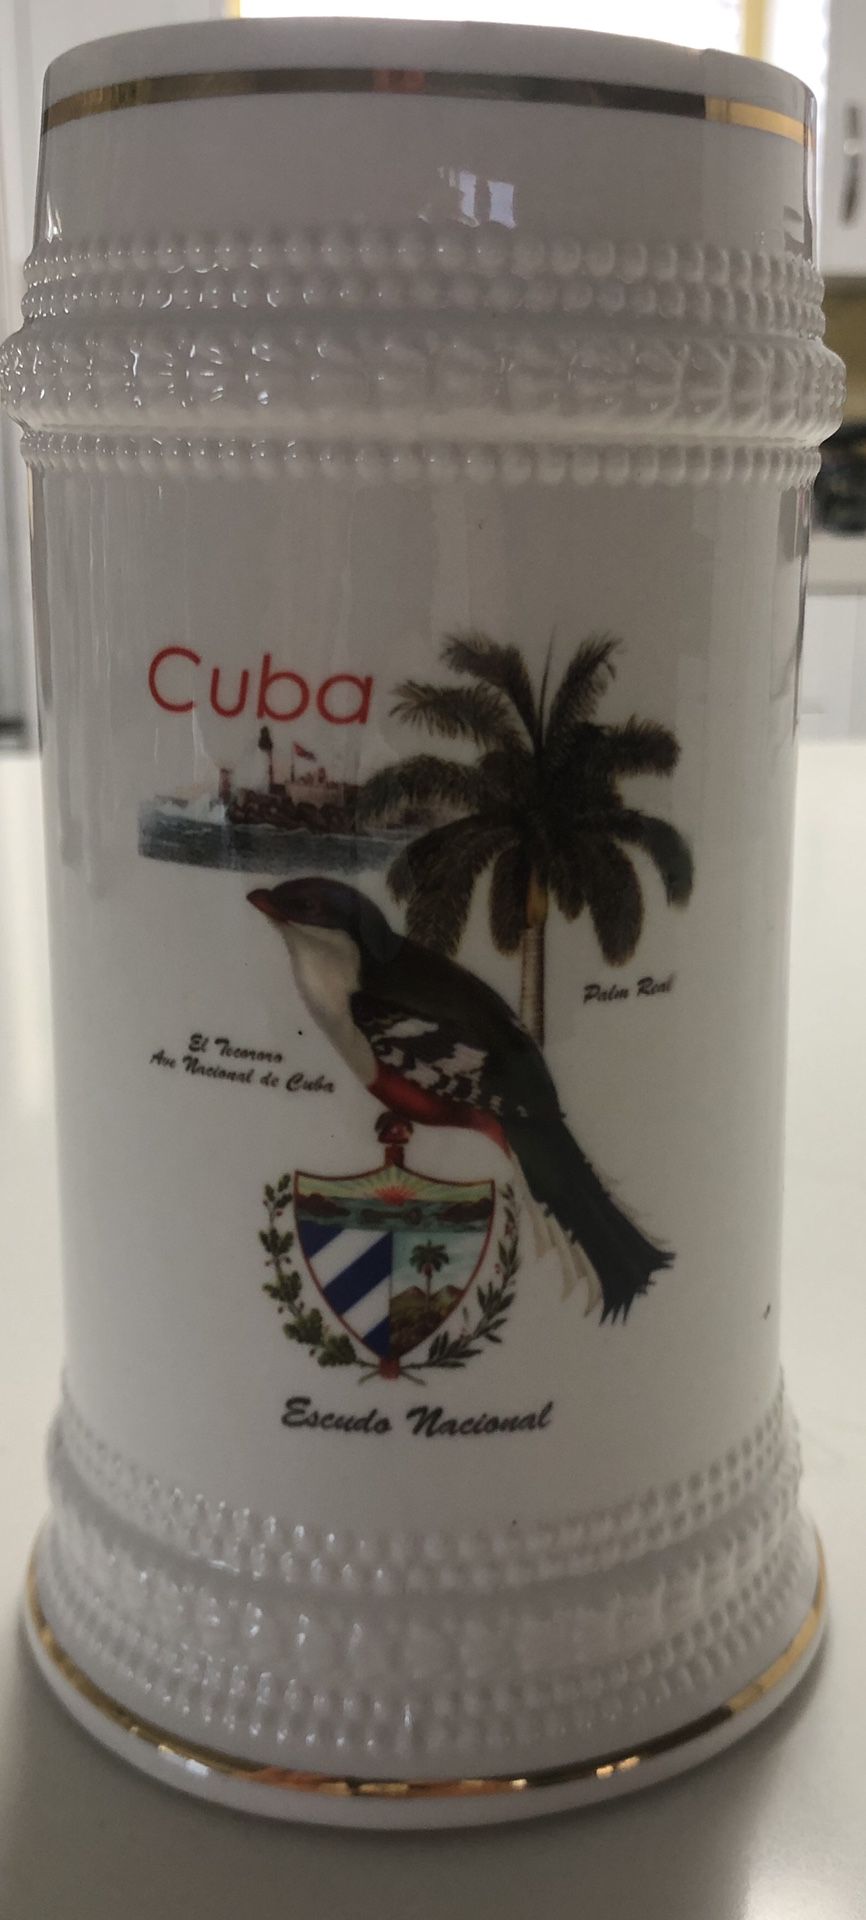 Cuba flag ceramic beer stein A7